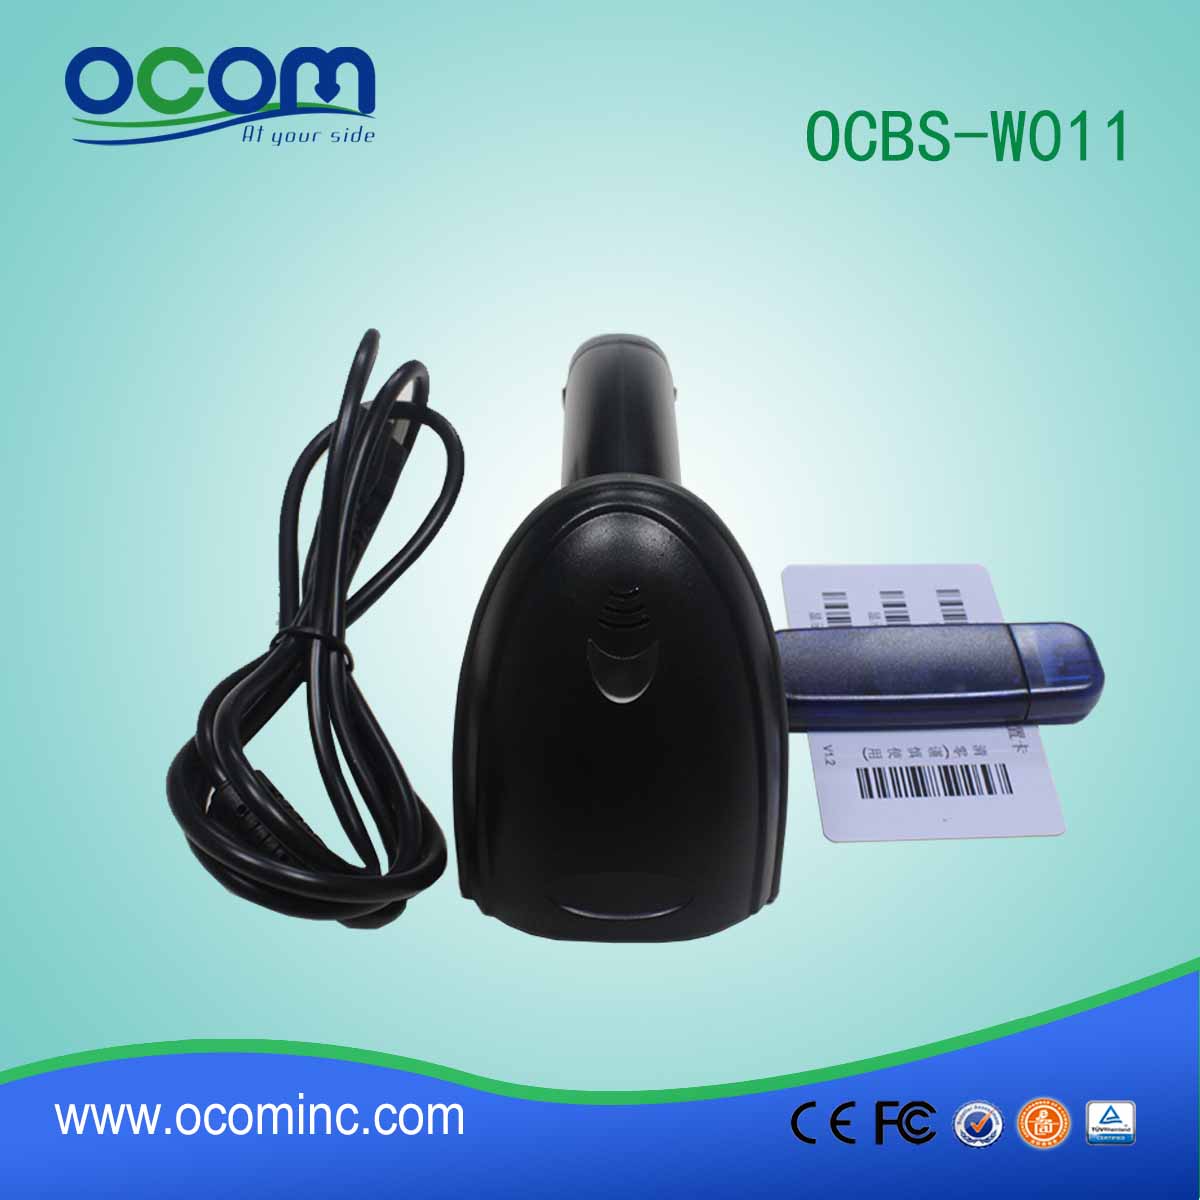 中国廉价品无线条码扫描仪蓝牙-OCBS-W011